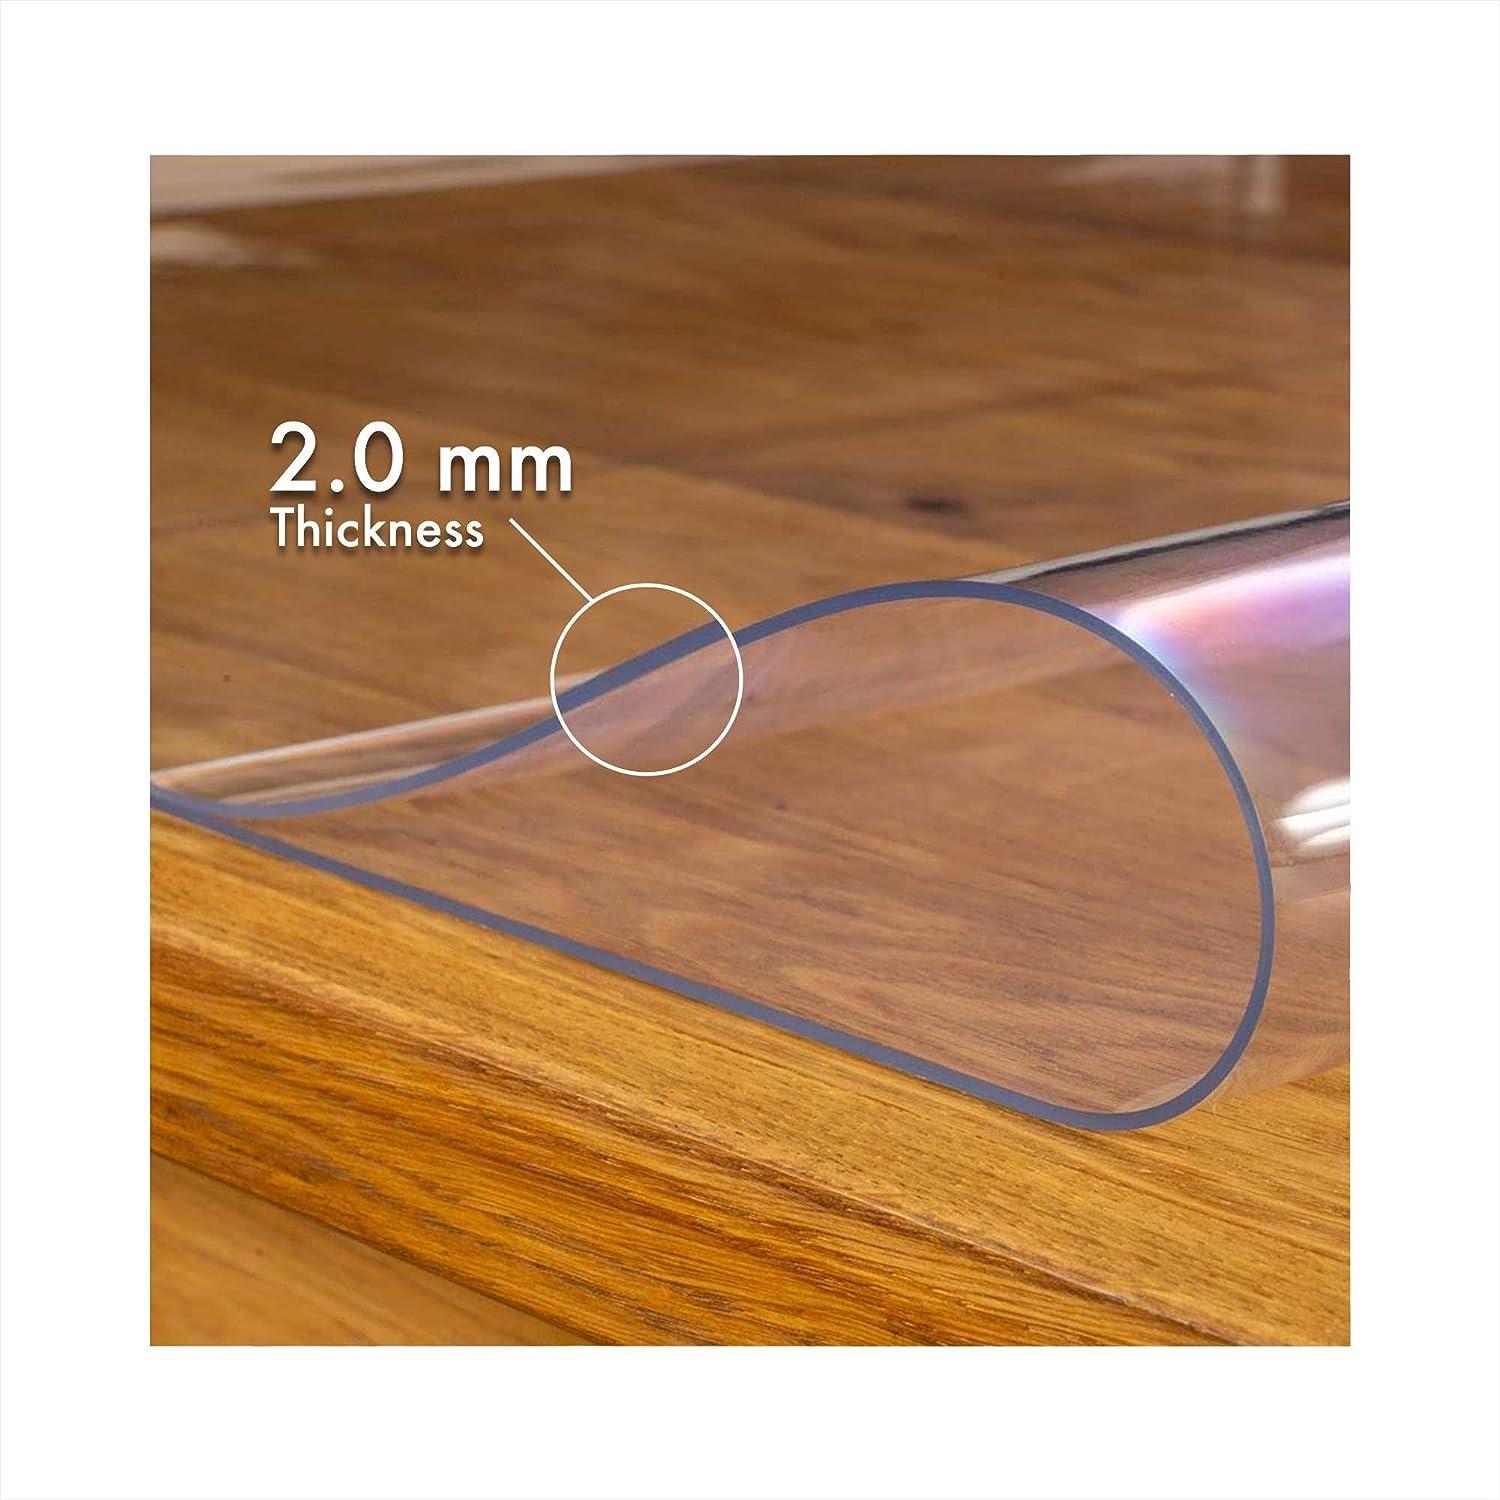 Pellicole per tavoli da 2 mm di spessore da Amazon